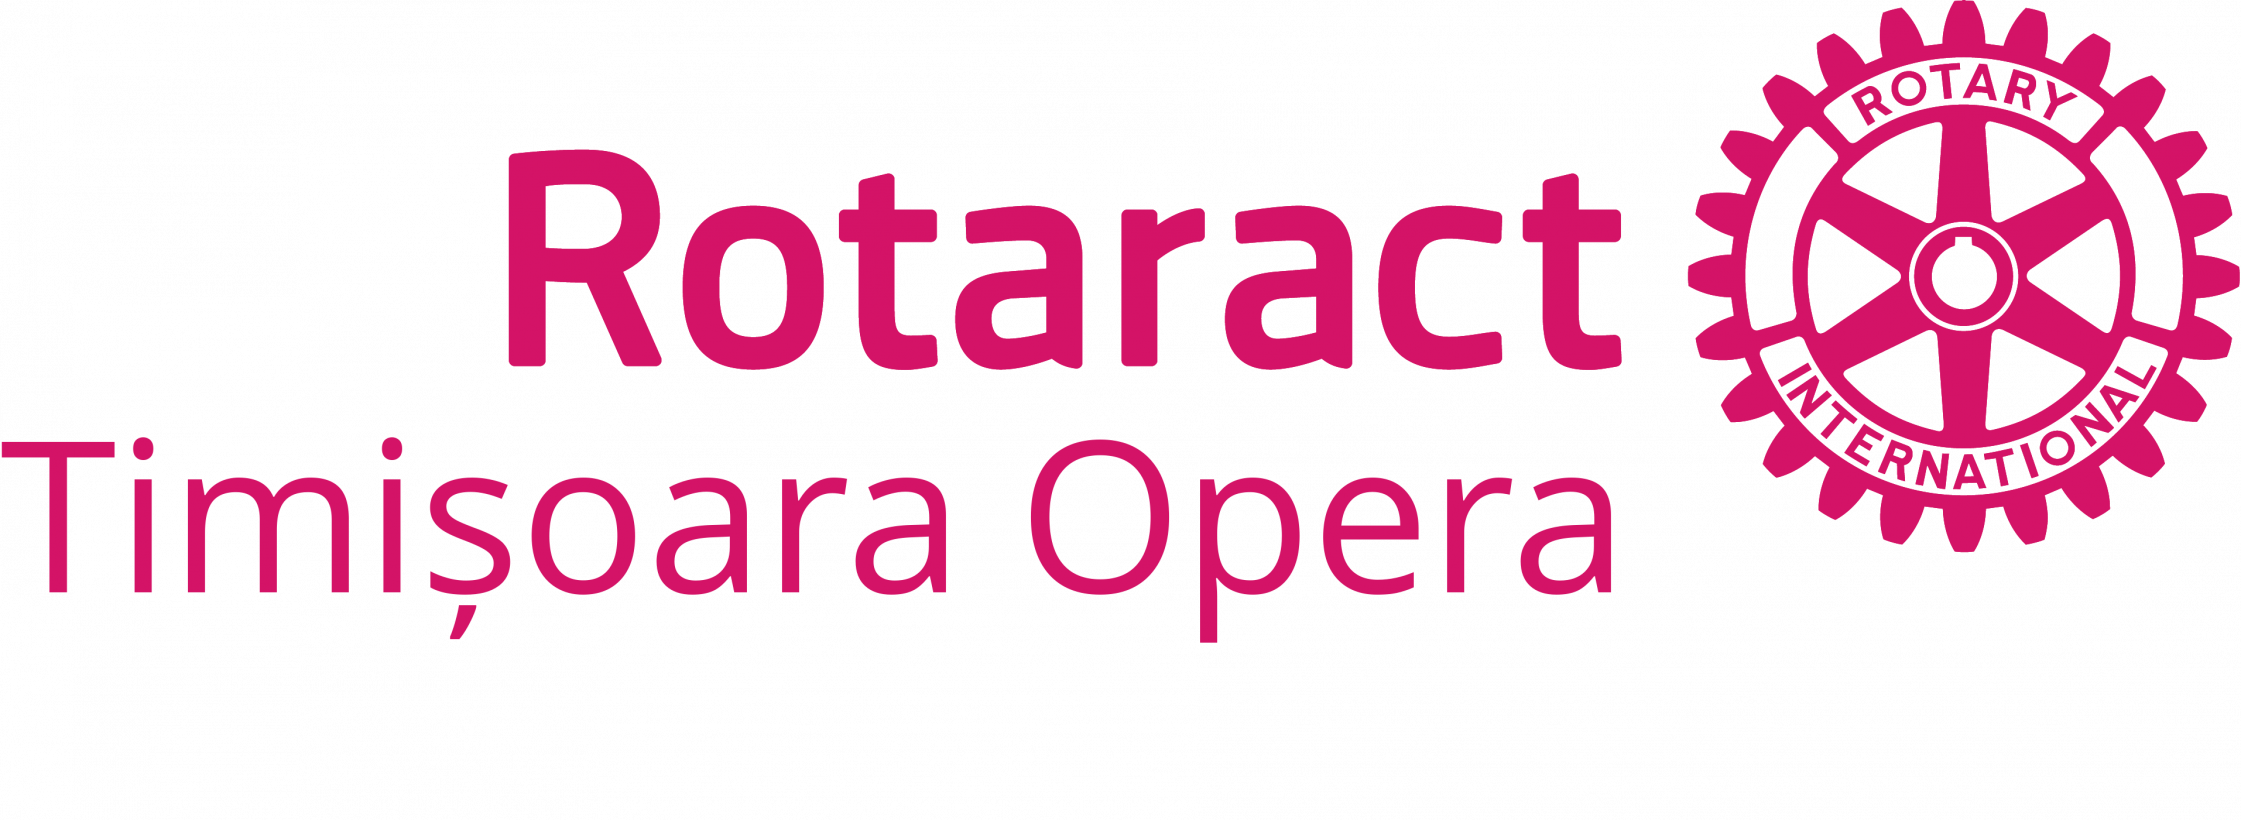 ASOCIATIA ROTARACT TIMISOARA OPERA logo